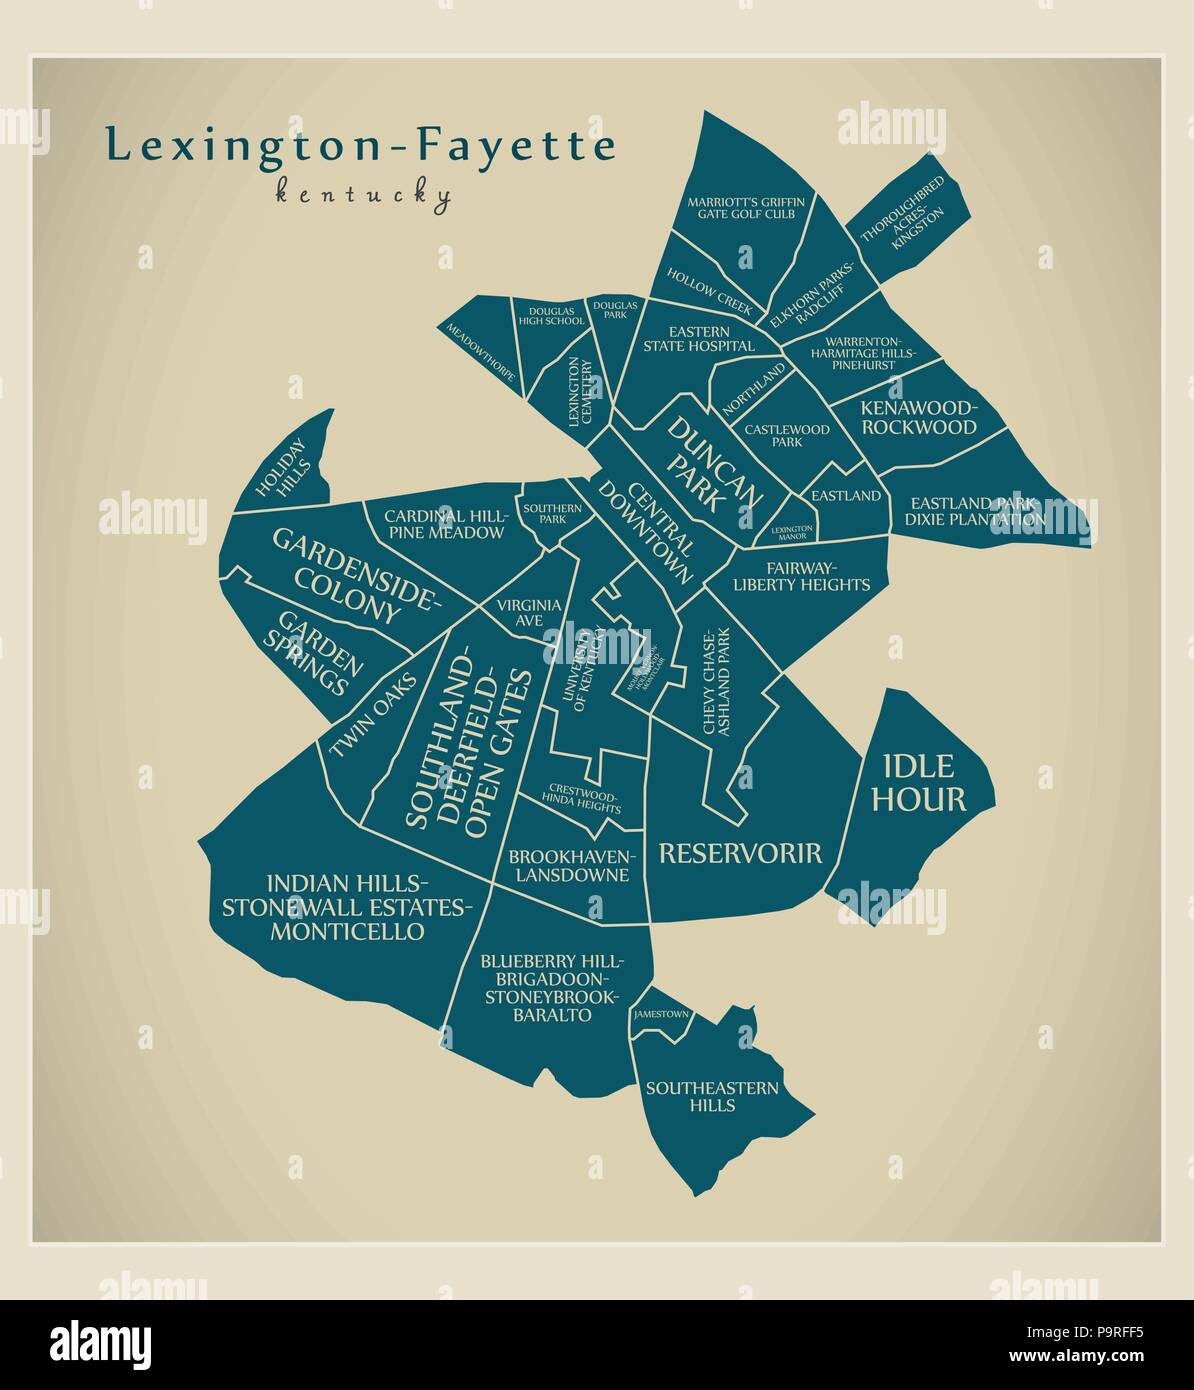 Città moderna mappa - Lexington-Fayette Kentucky città degli Stati Uniti con i quartieri e titoli Illustrazione Vettoriale